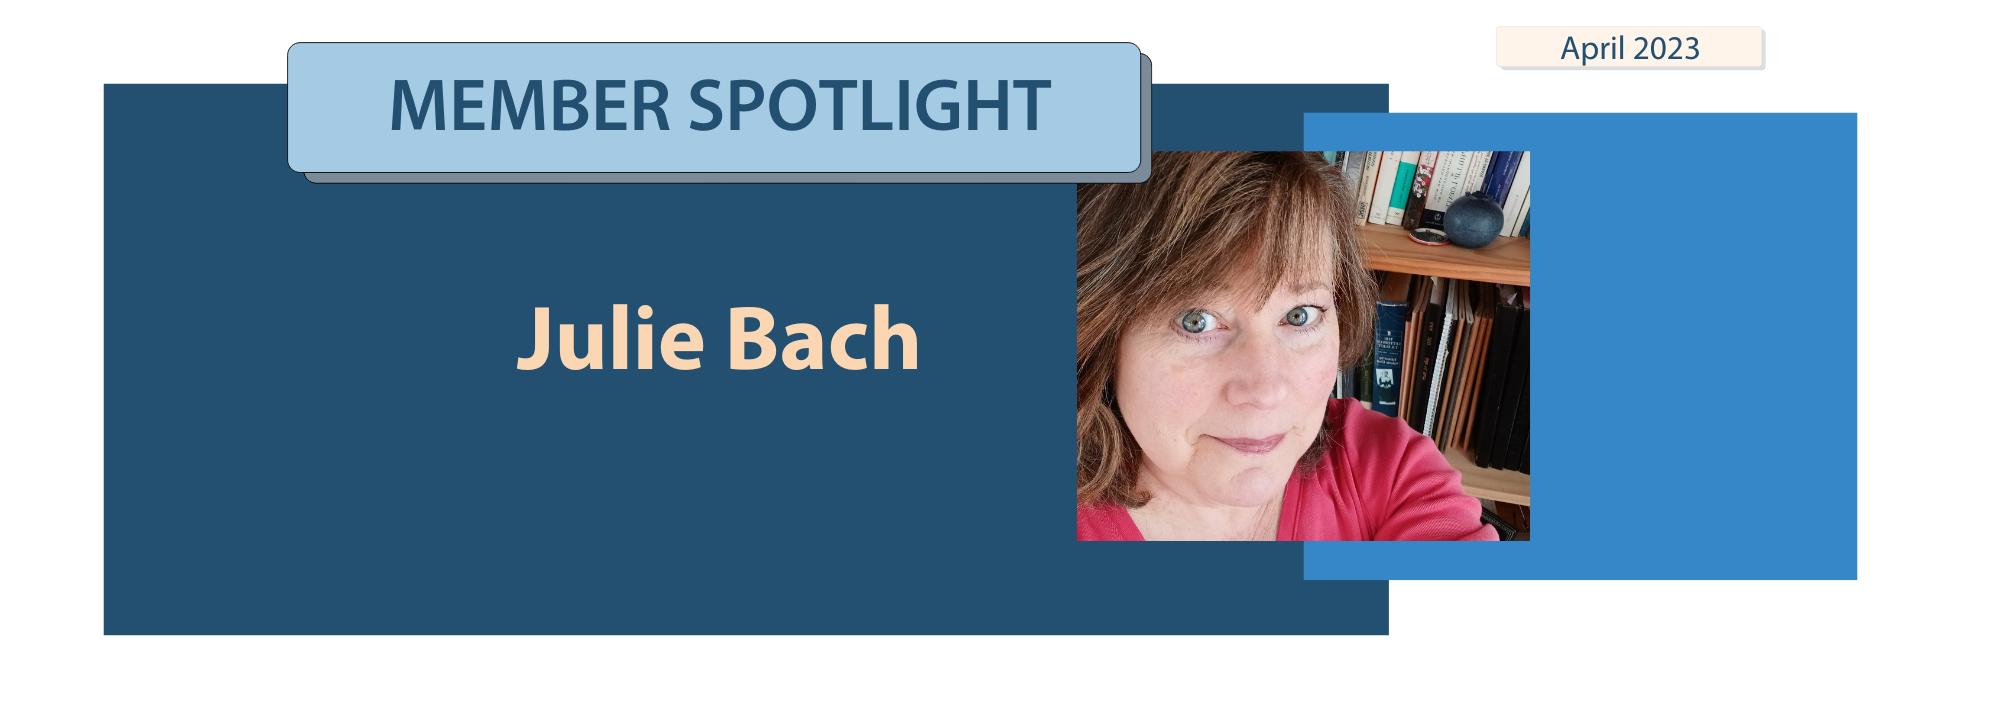 Member Spotlight Julie Bach